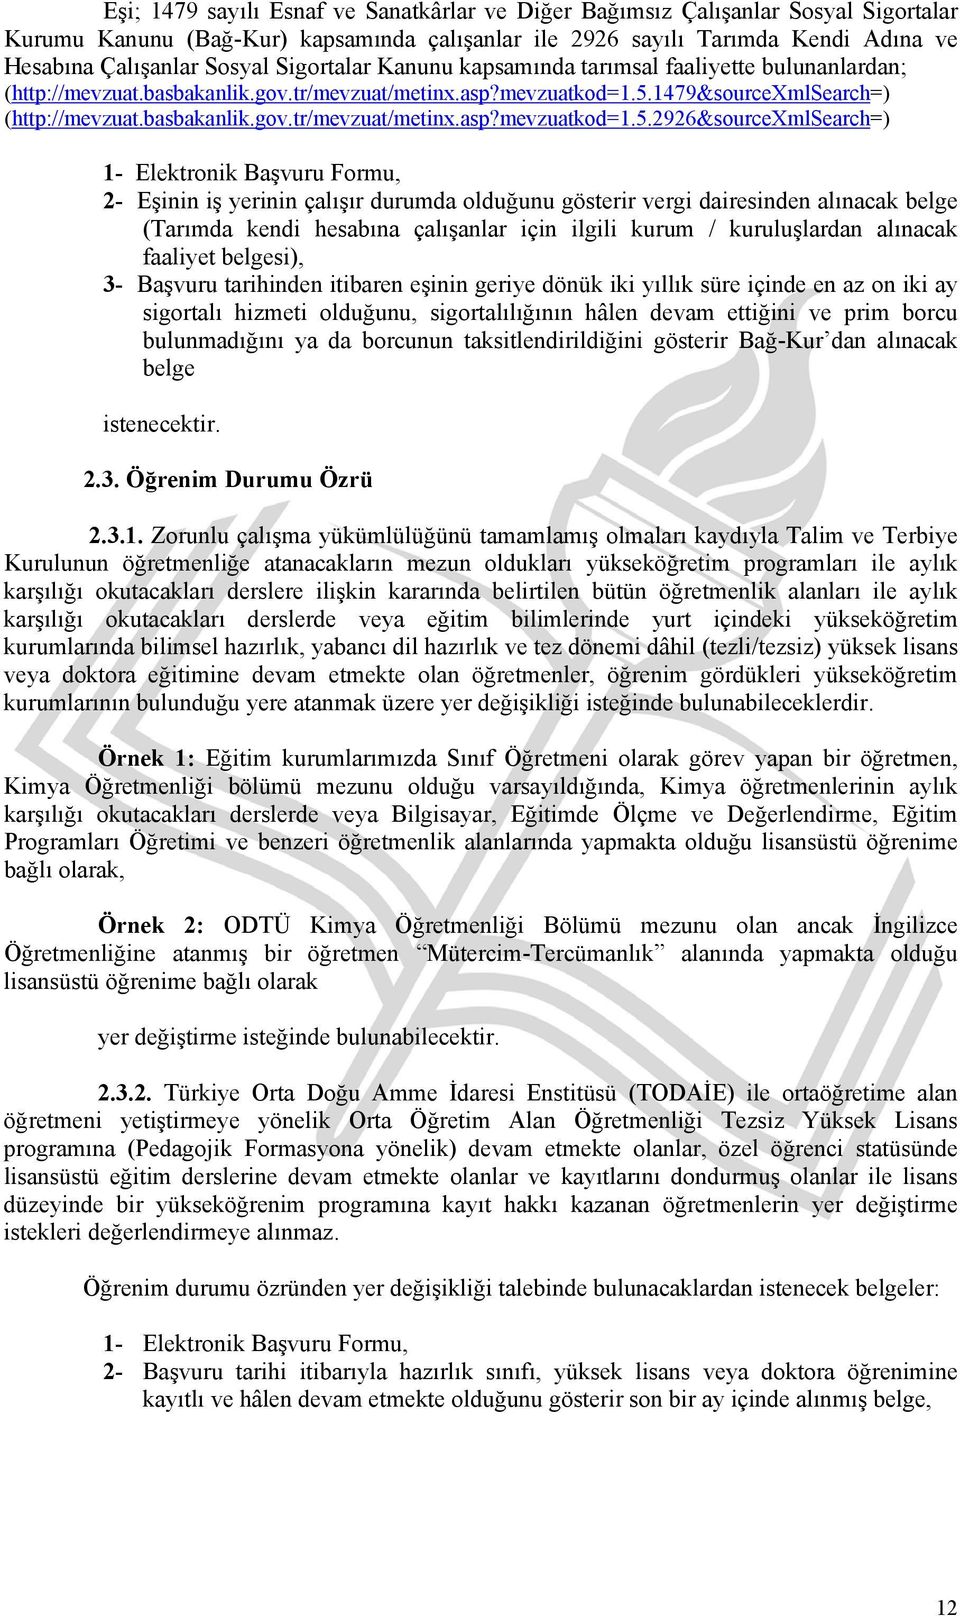 1479&sourcexmlsearch=) (http://mevzuat.basbakanlik.gov.tr/mevzuat/metinx.asp?mevzuatkod=1.5.